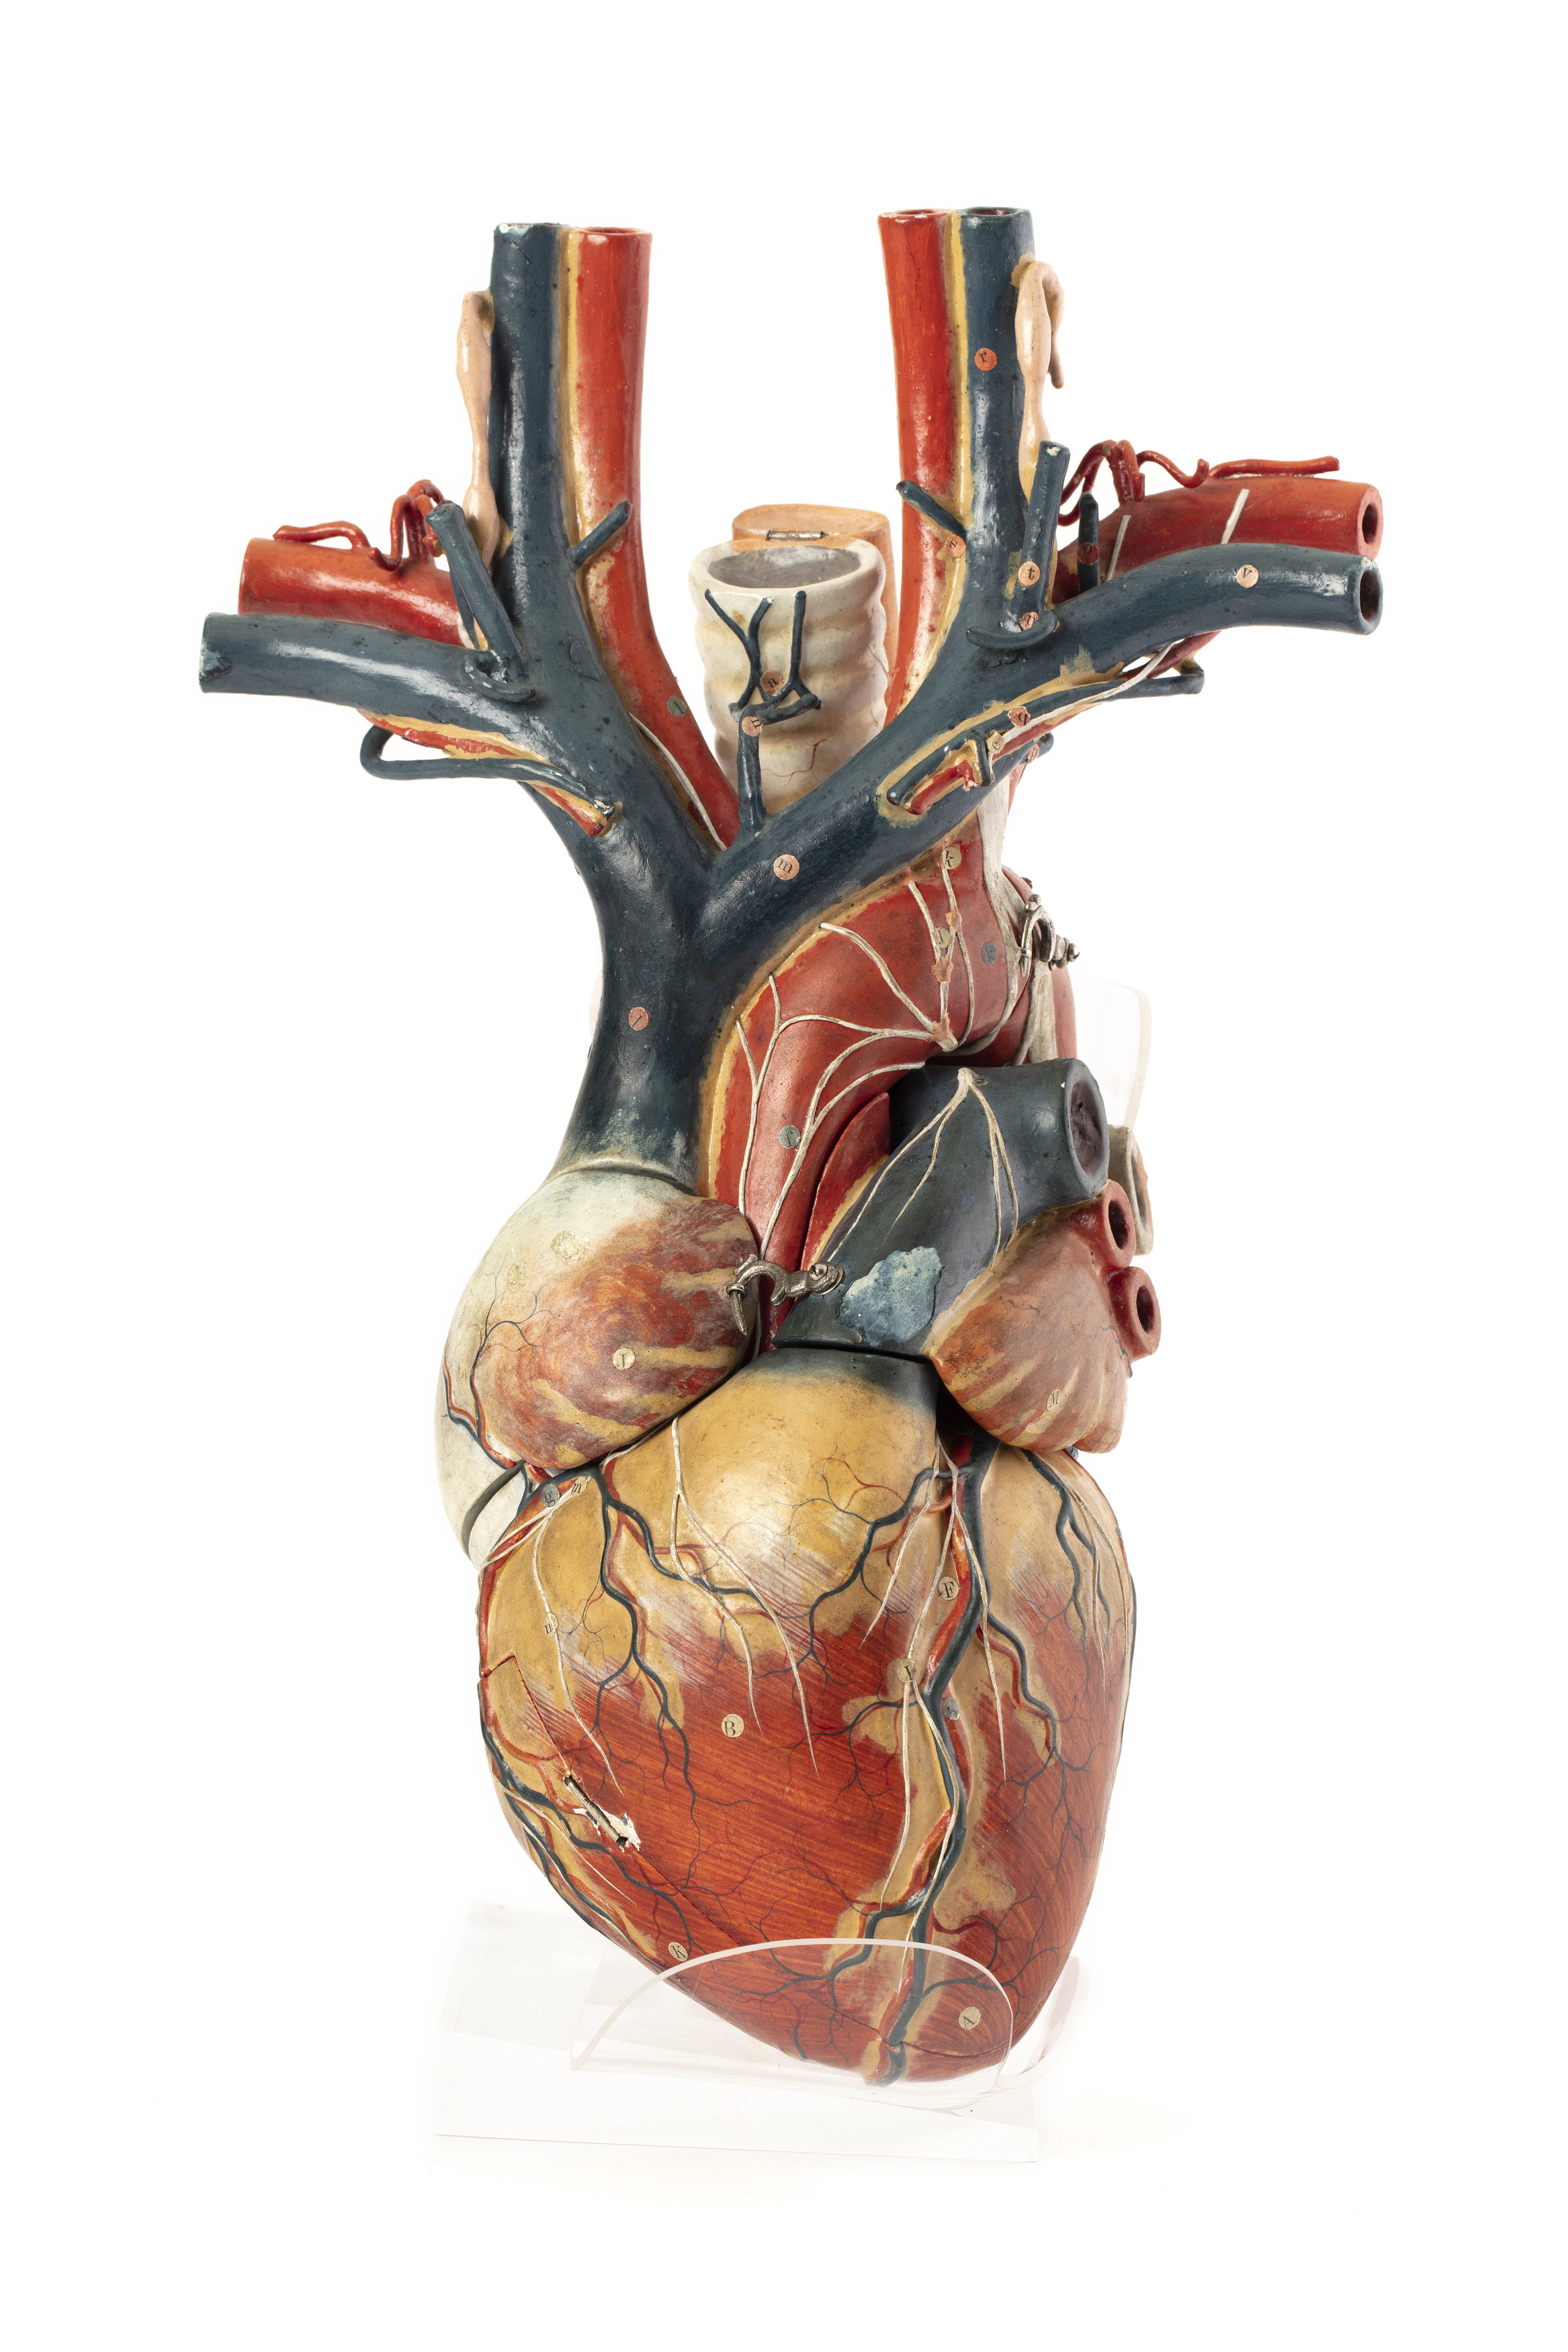 Papier-mache anatomical model of a heart